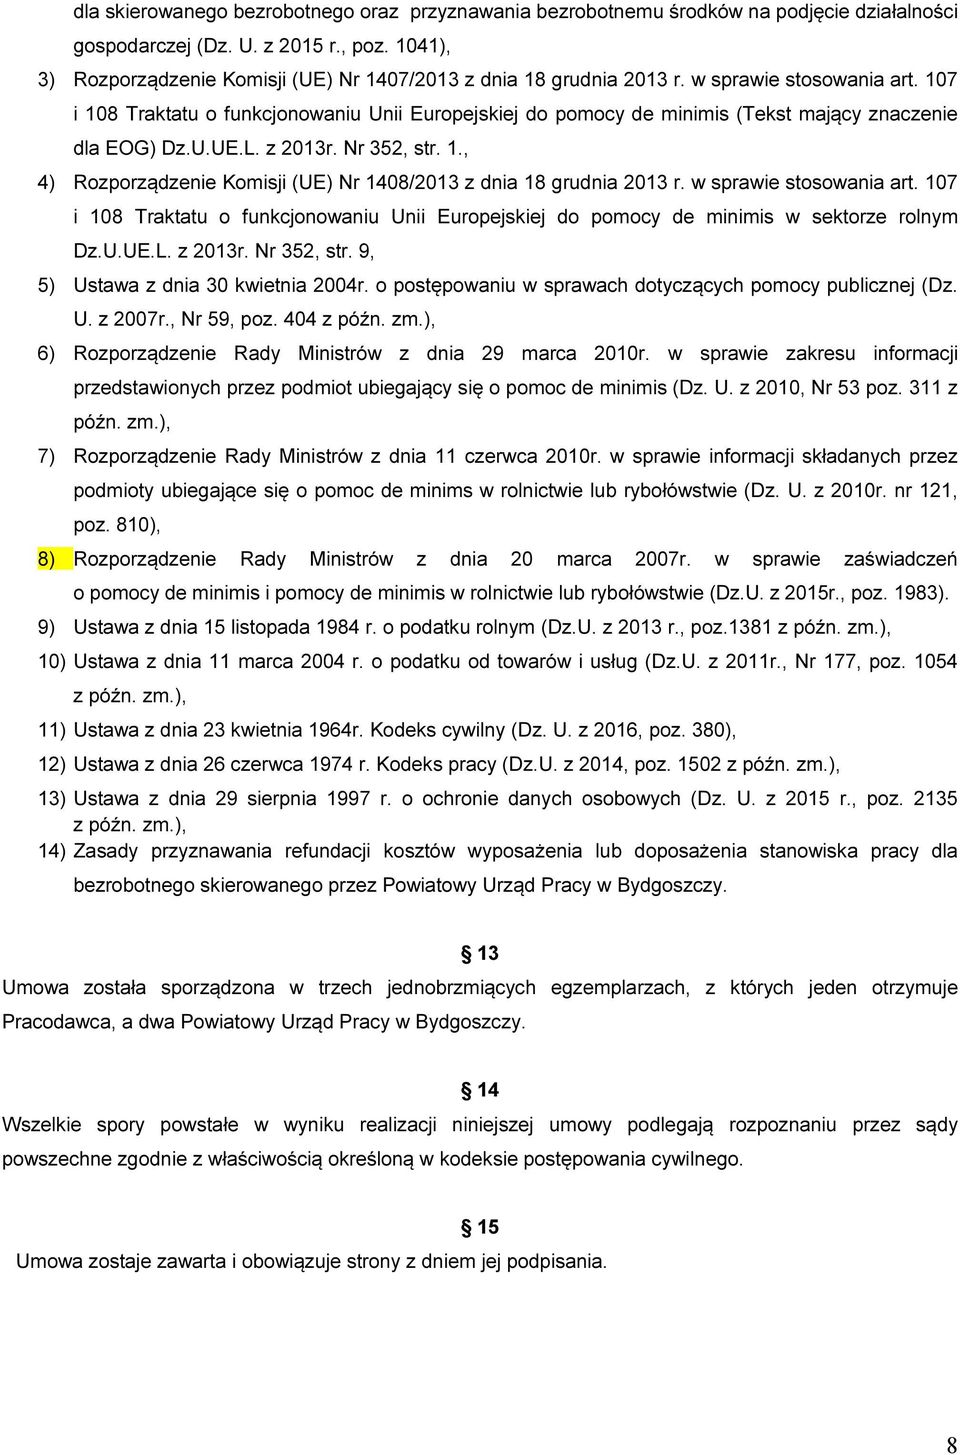 107 i 108 Traktatu o funkcjonowaniu Unii Europejskiej do pomocy de minimis (Tekst mający znaczenie dla EOG) Dz.U.UE.L. z 2013r. Nr 352, str. 1., 4) Rozporządzenie Komisji (UE) Nr 1408/2013 z dnia 18 grudnia 2013 r.